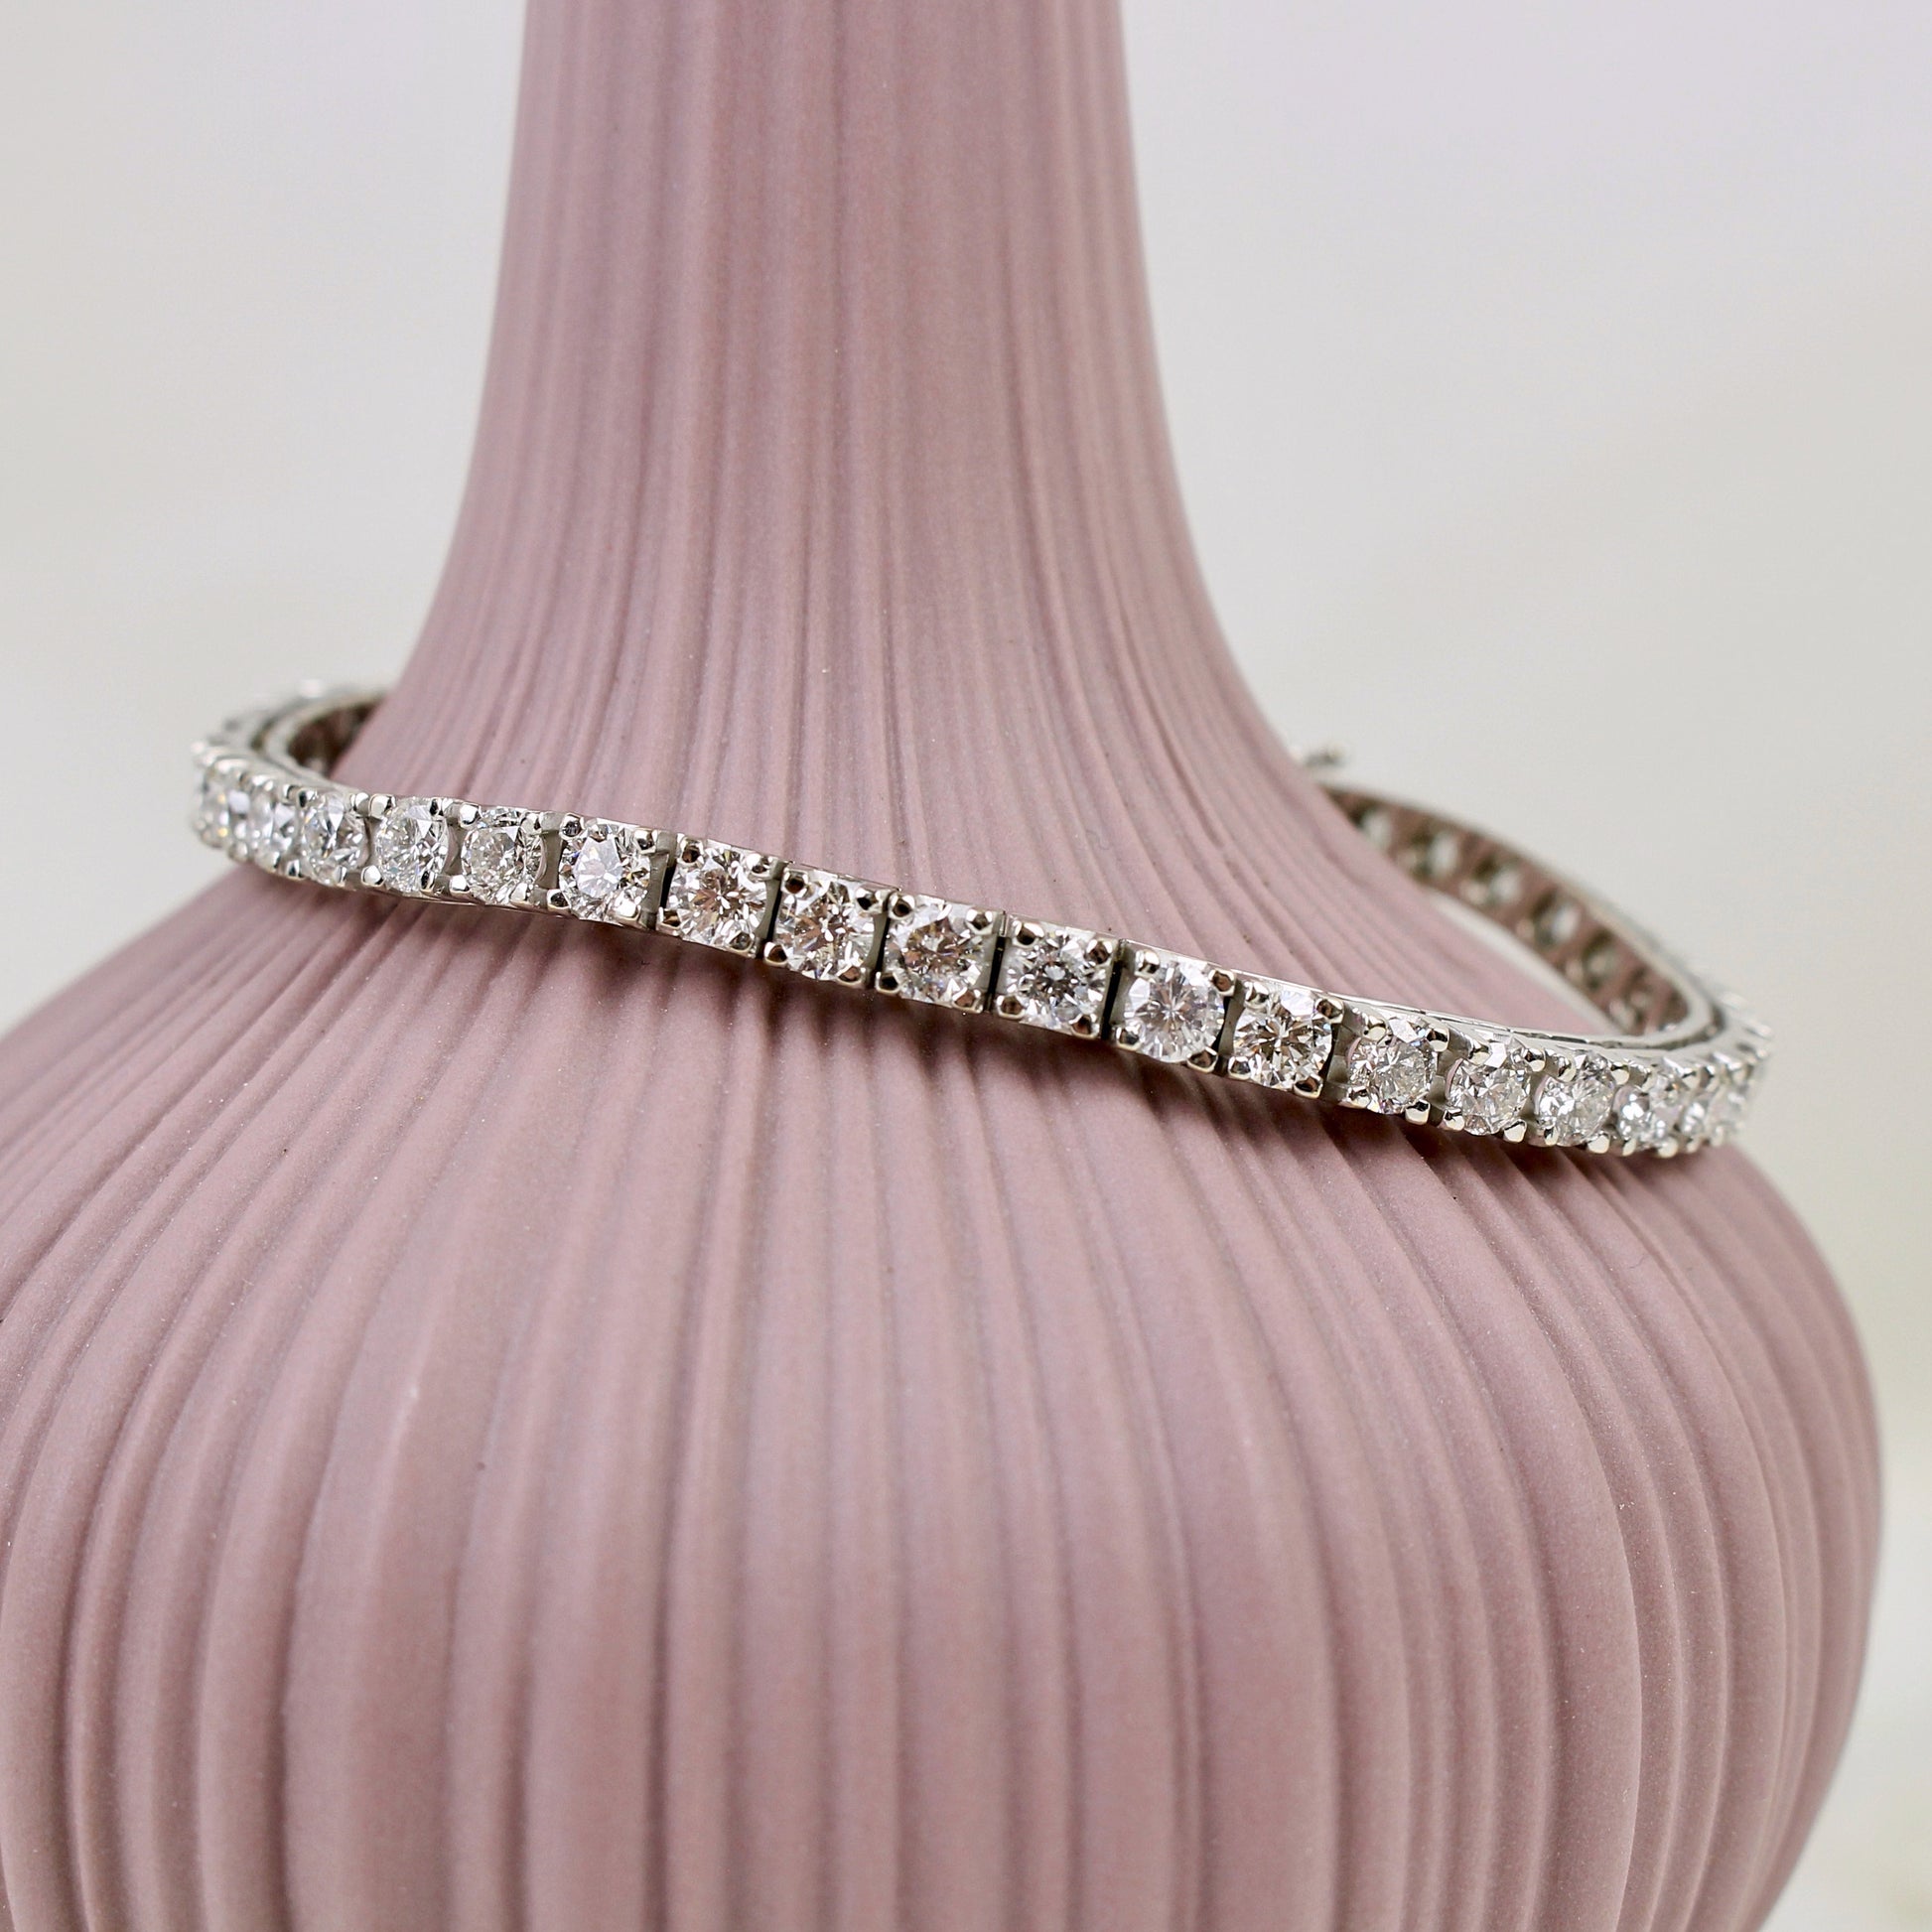 Bracelet souple ligne de diamants dit bracelet tennis/poids total des diamants 7,48 carats